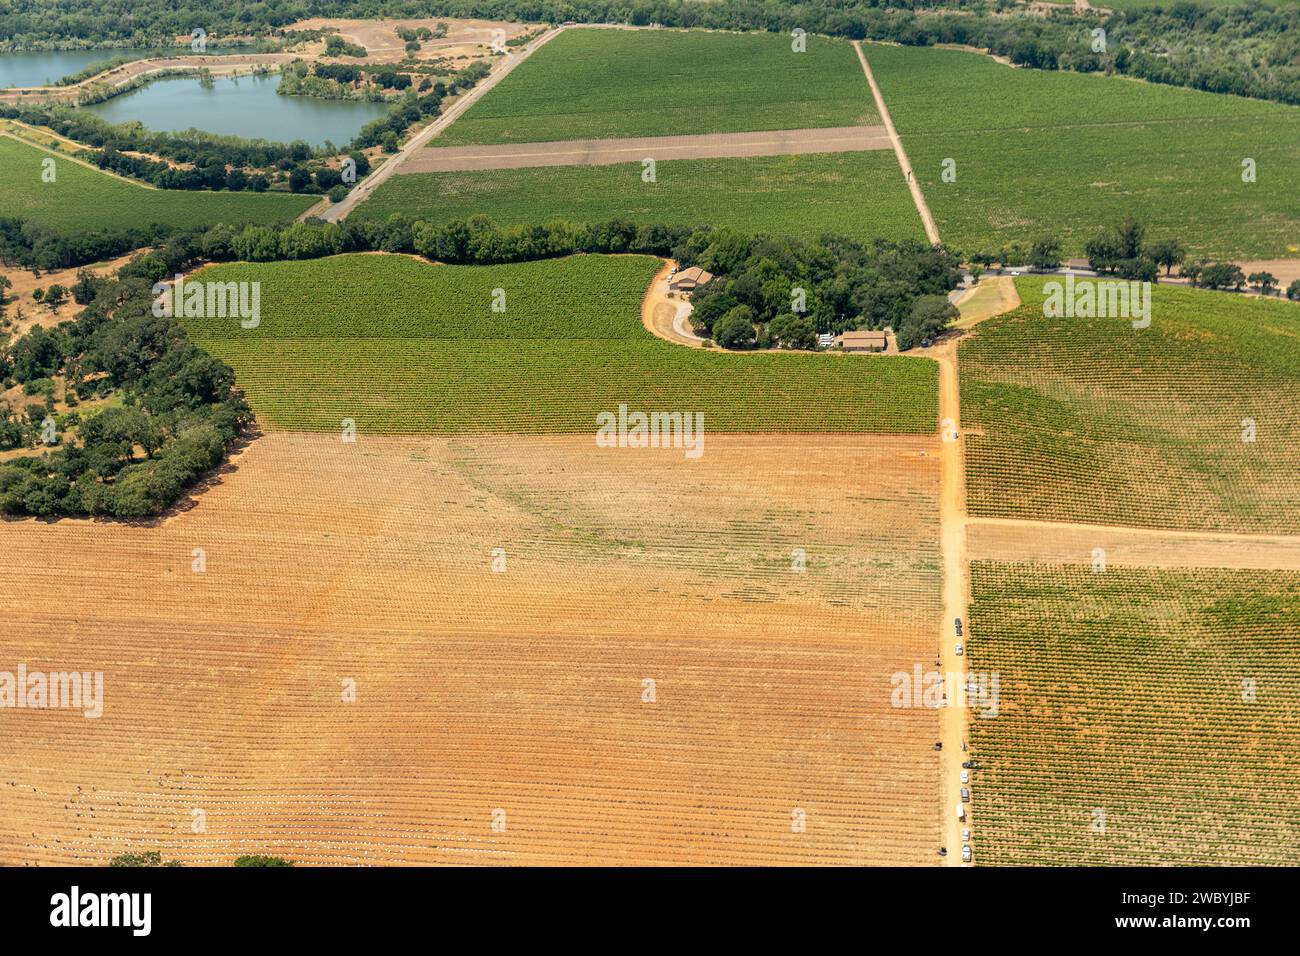 Vue aérienne de rangées vertes de plantes dans les champs agricoles, les vignobles et les villes agricoles du nord de la Californie Banque D'Images